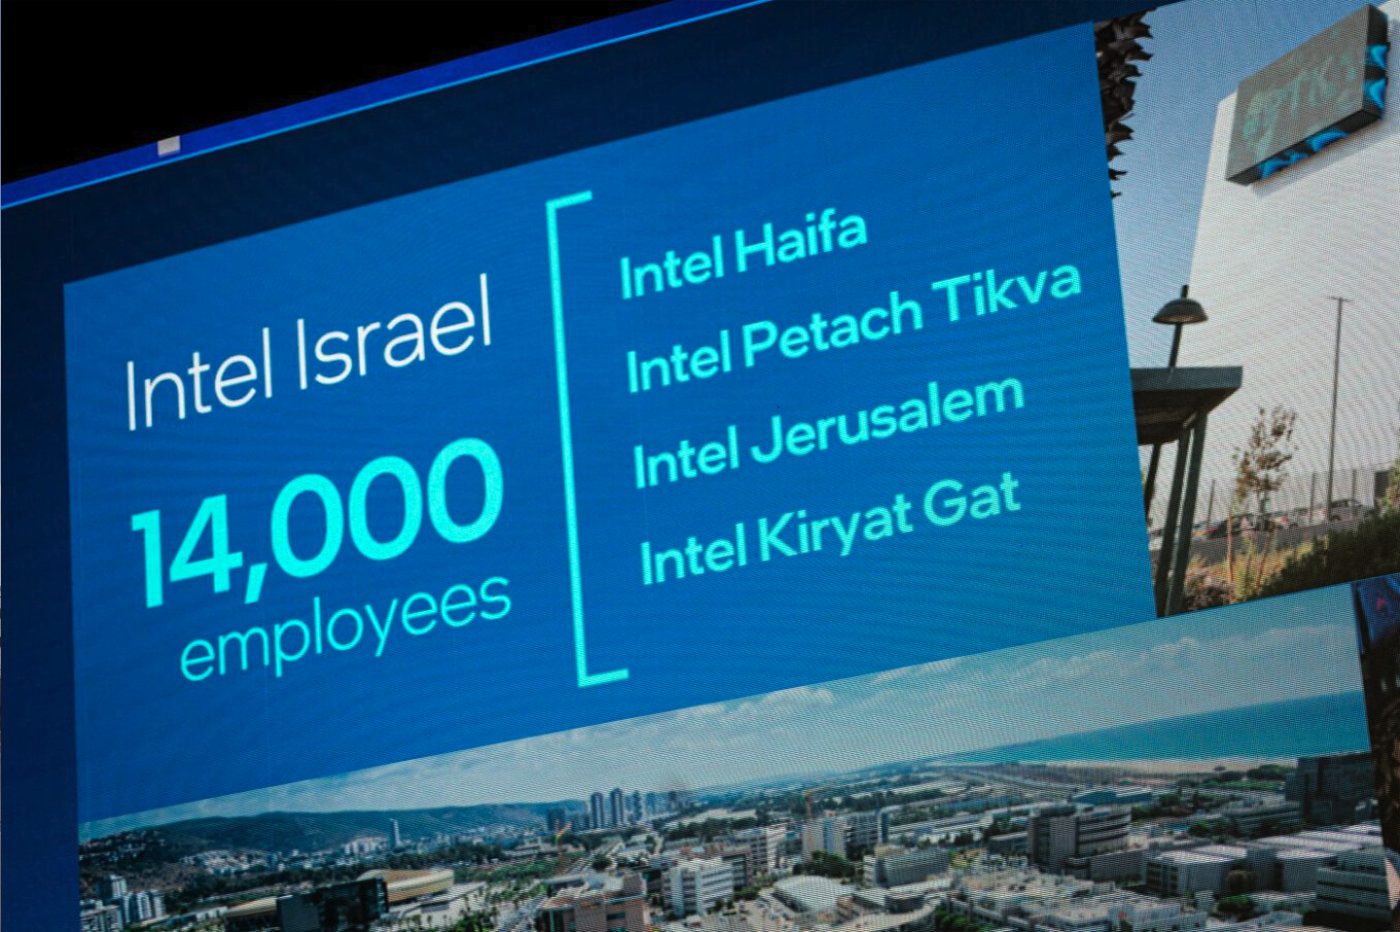 intel israel emplois